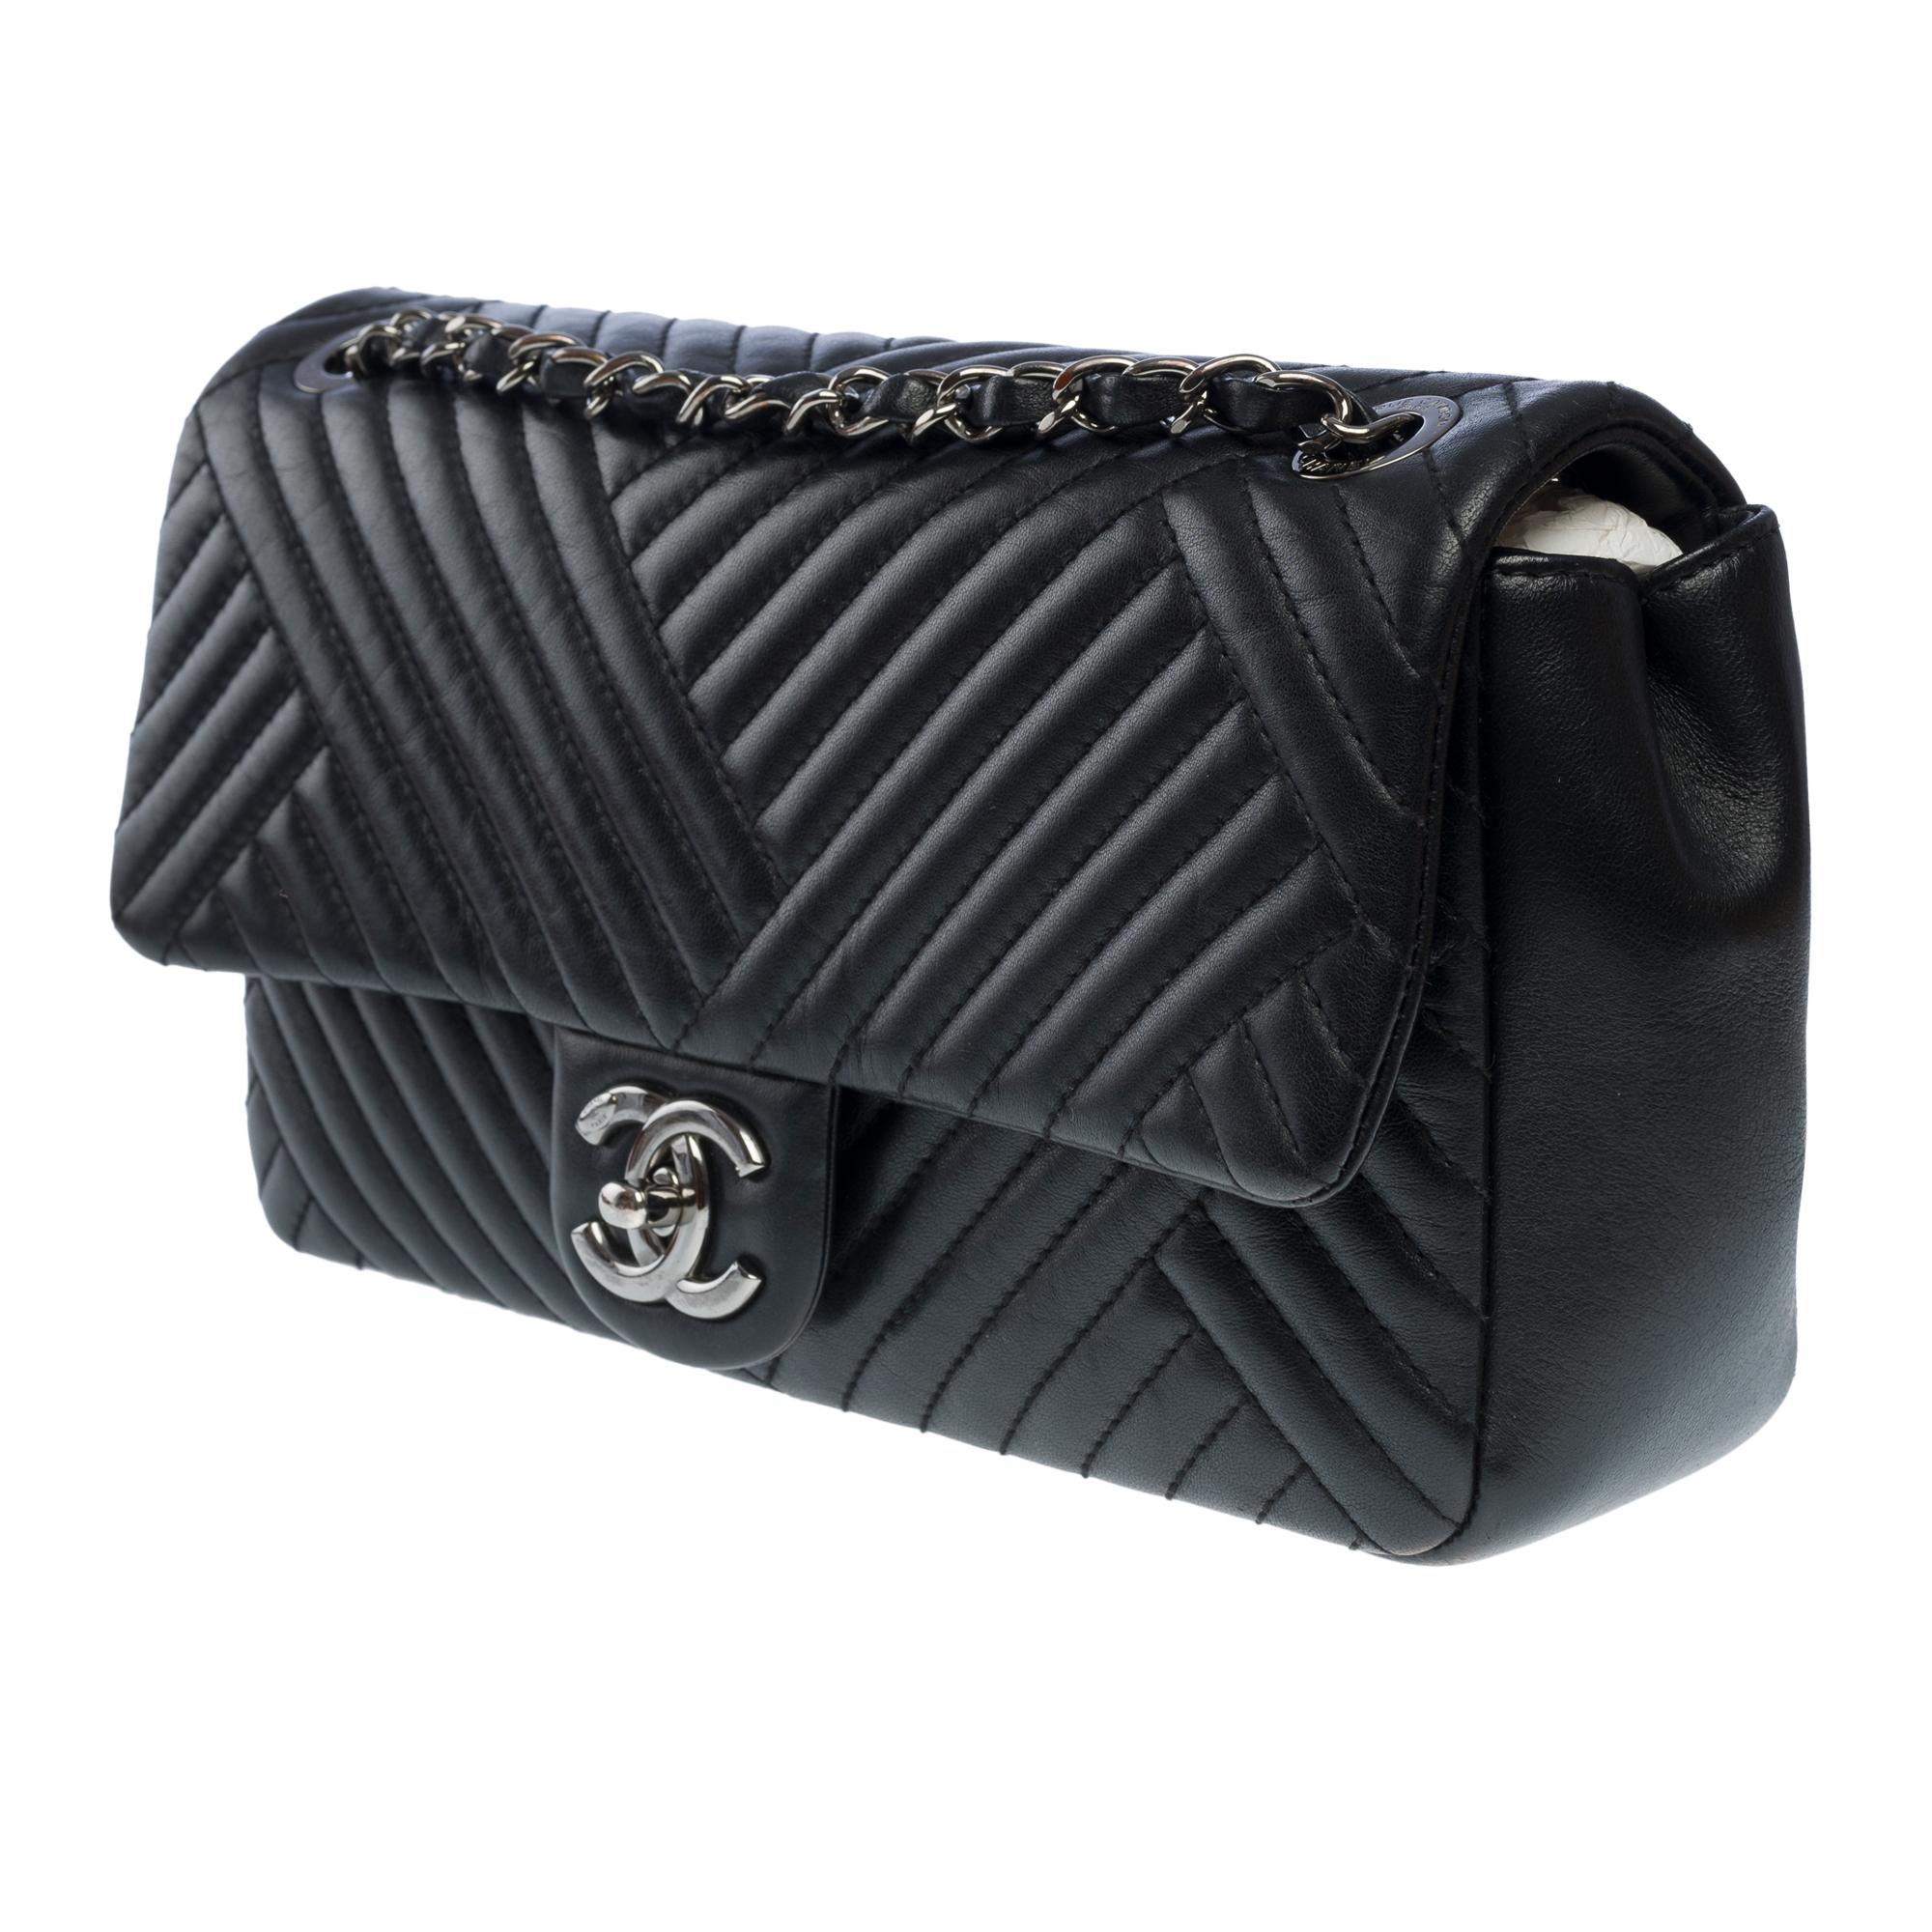 Women's Chanel Timeless shoulder flap bag in black asymmetrical lambskin leather, RHW